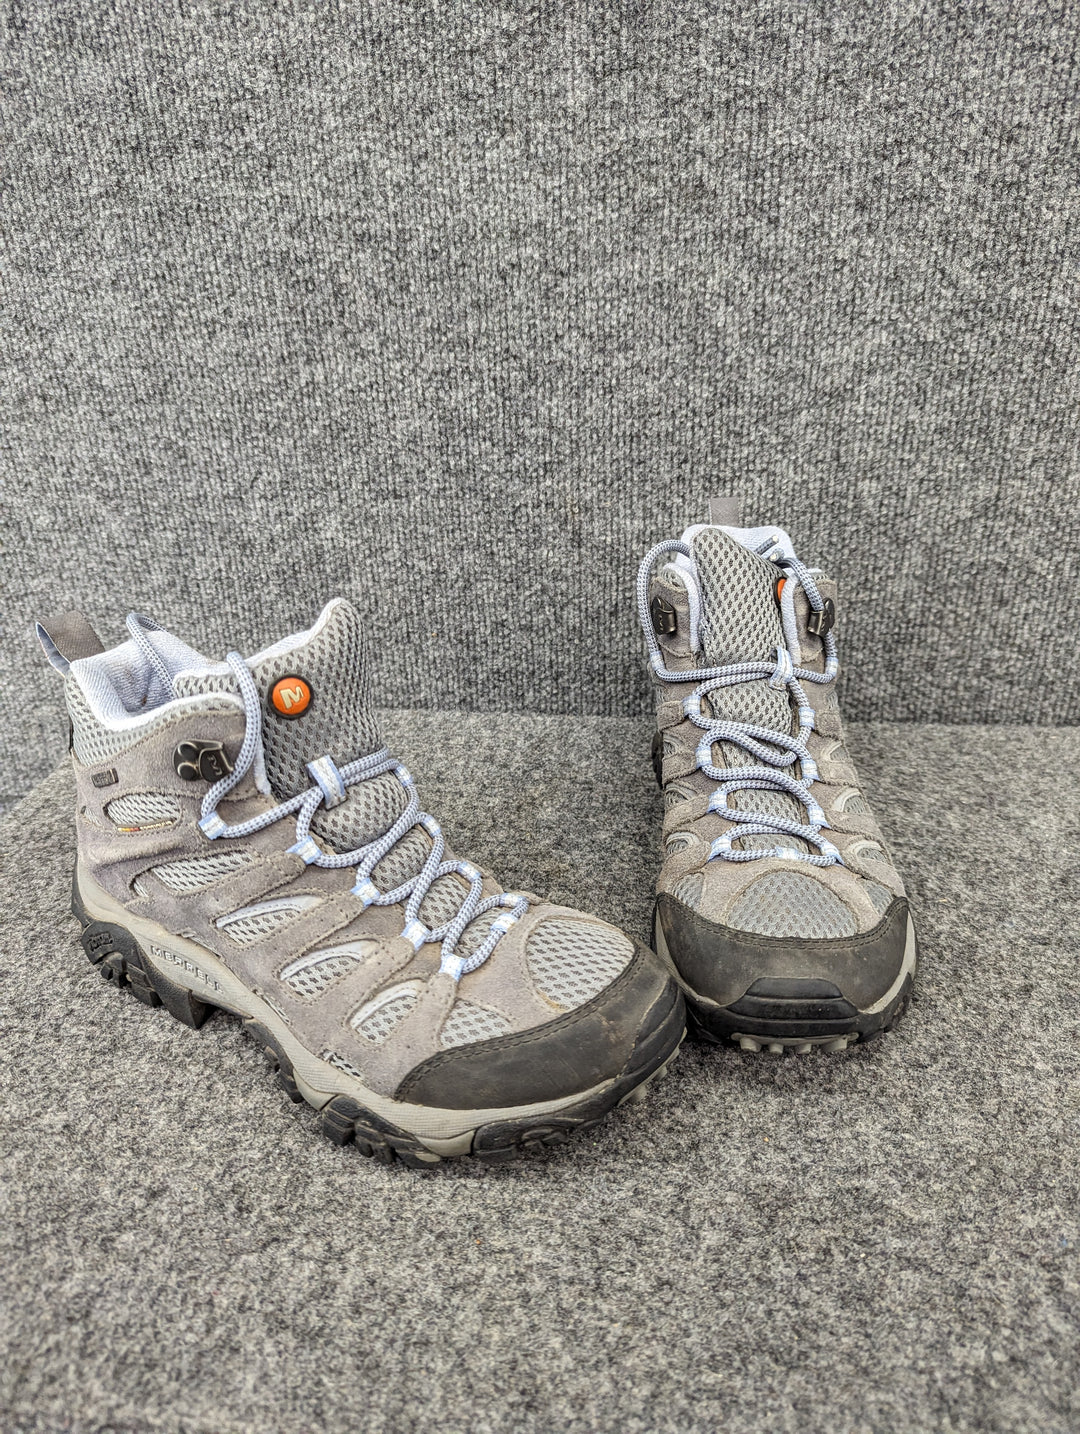 forfader Snestorm Fejlfri Merrell Size W8/39 Women's Hiking Boots – Rambleraven Gear Trader